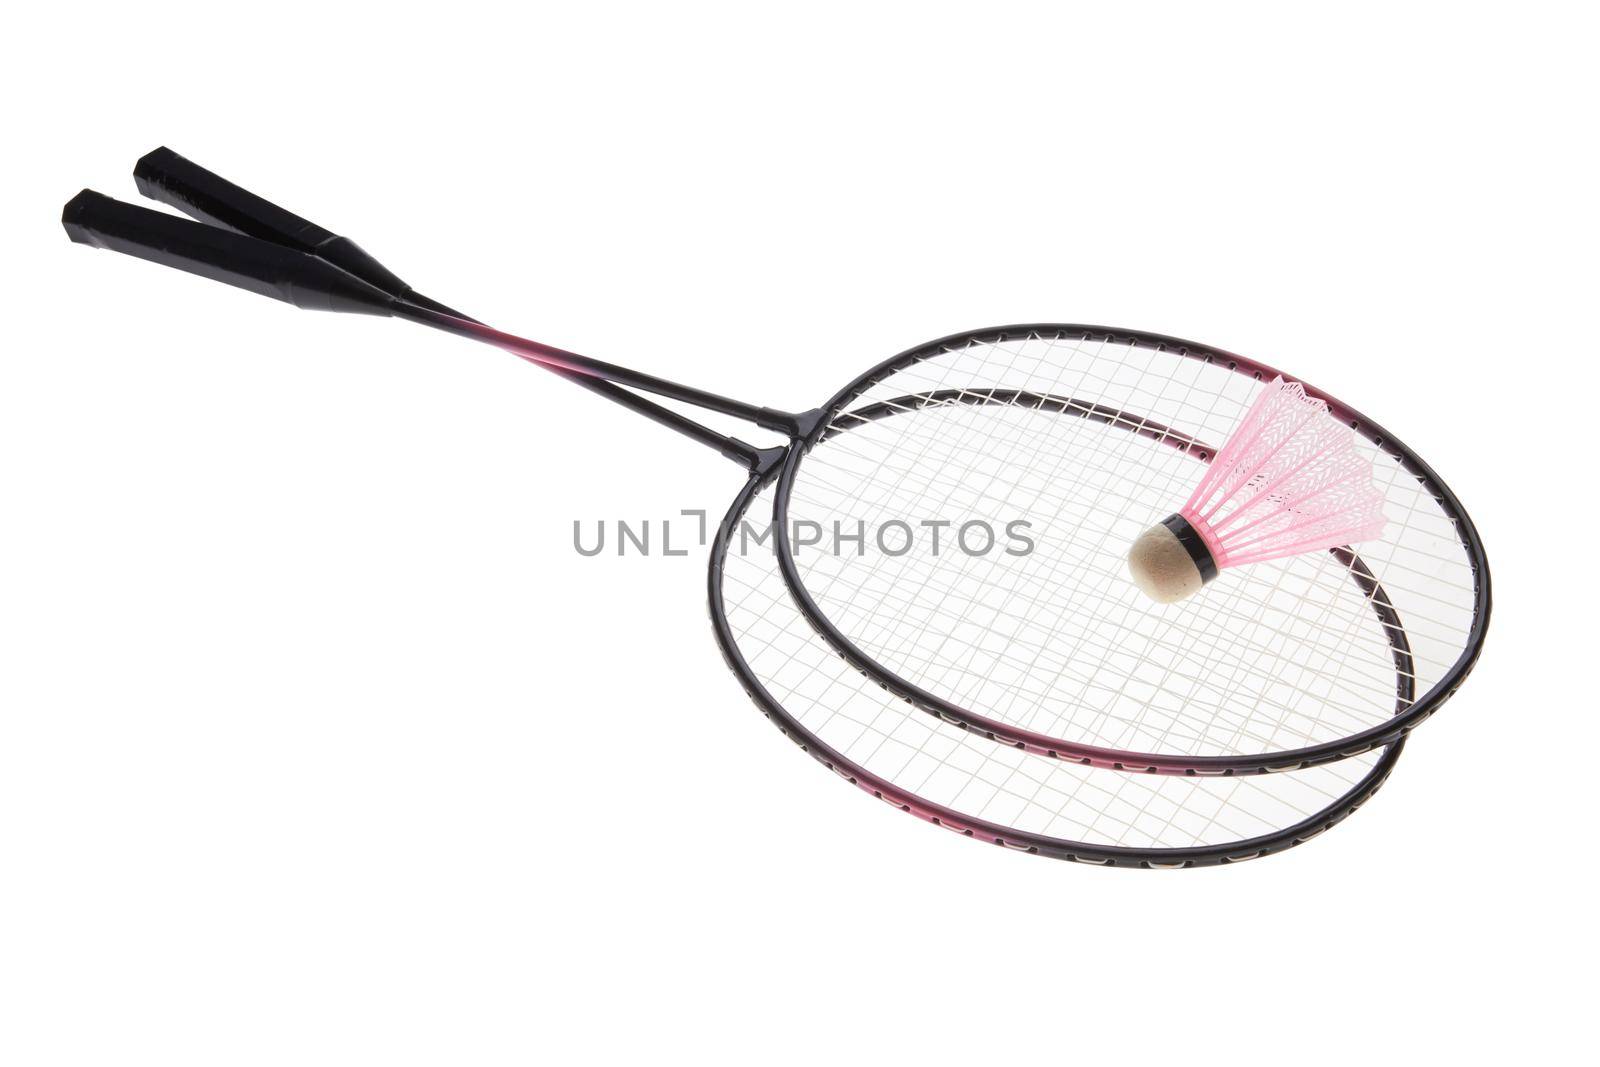 Badminton rackets by pioneer111